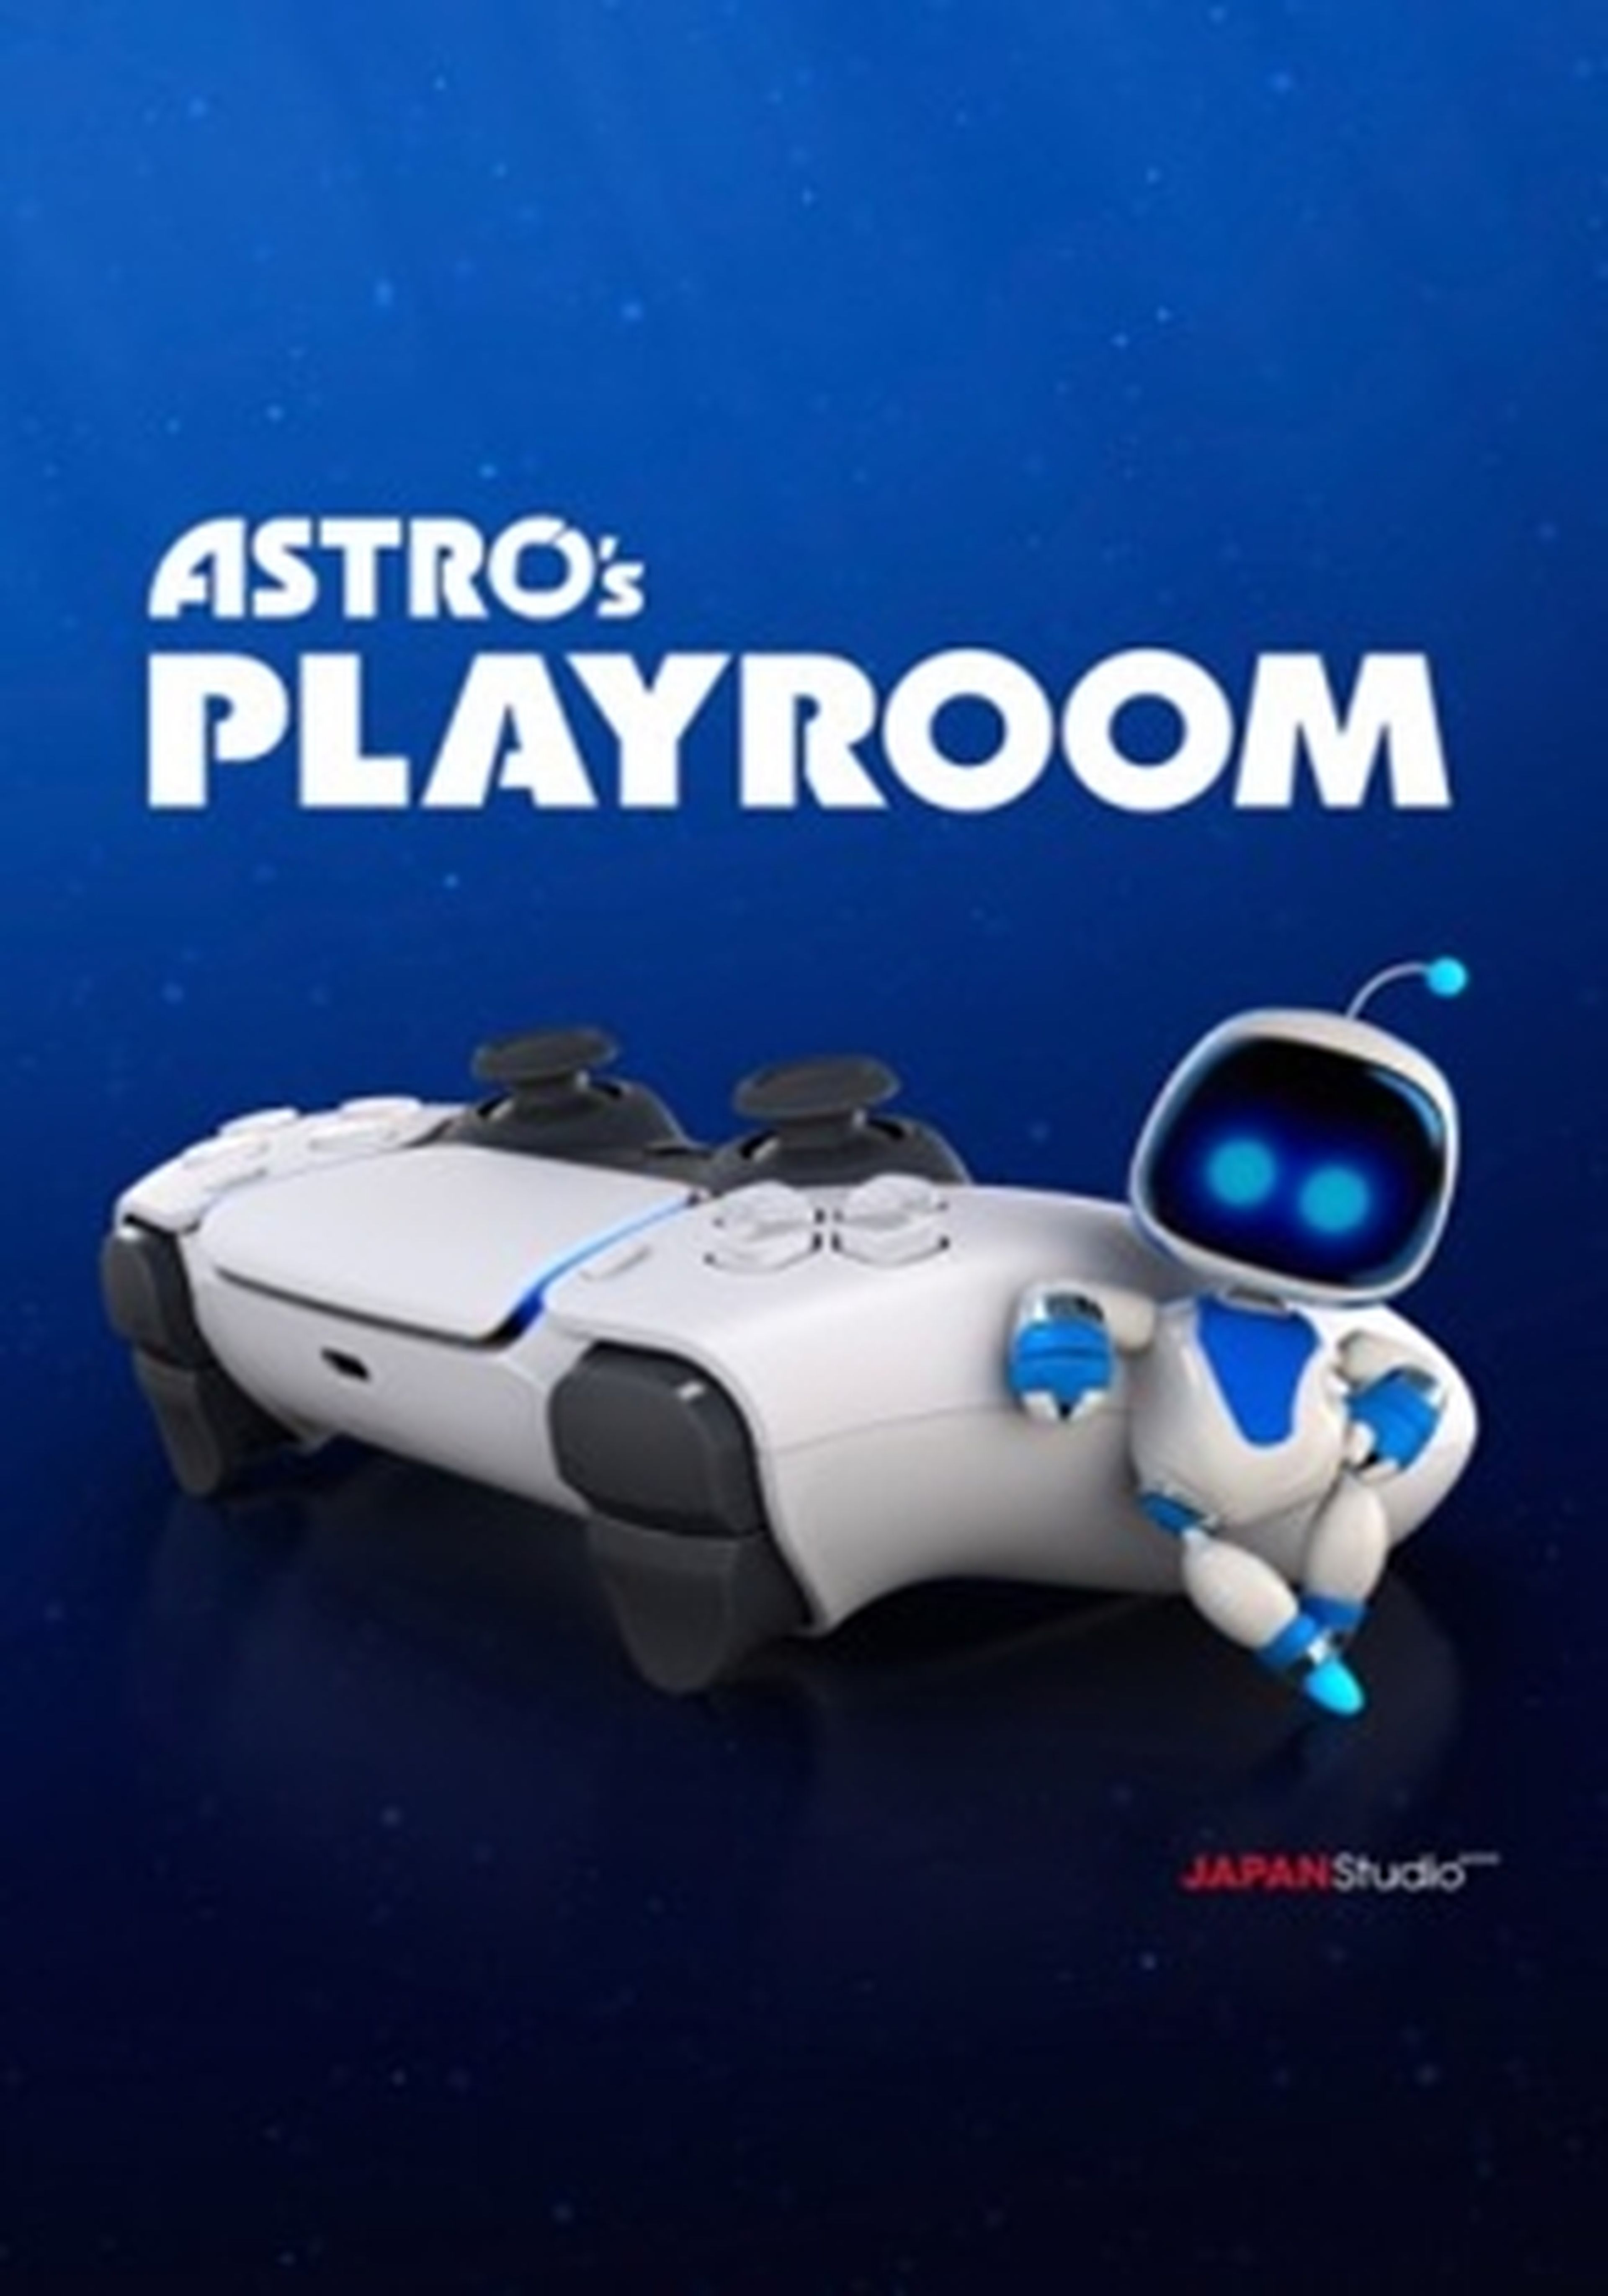 Astro's Playroom cartel